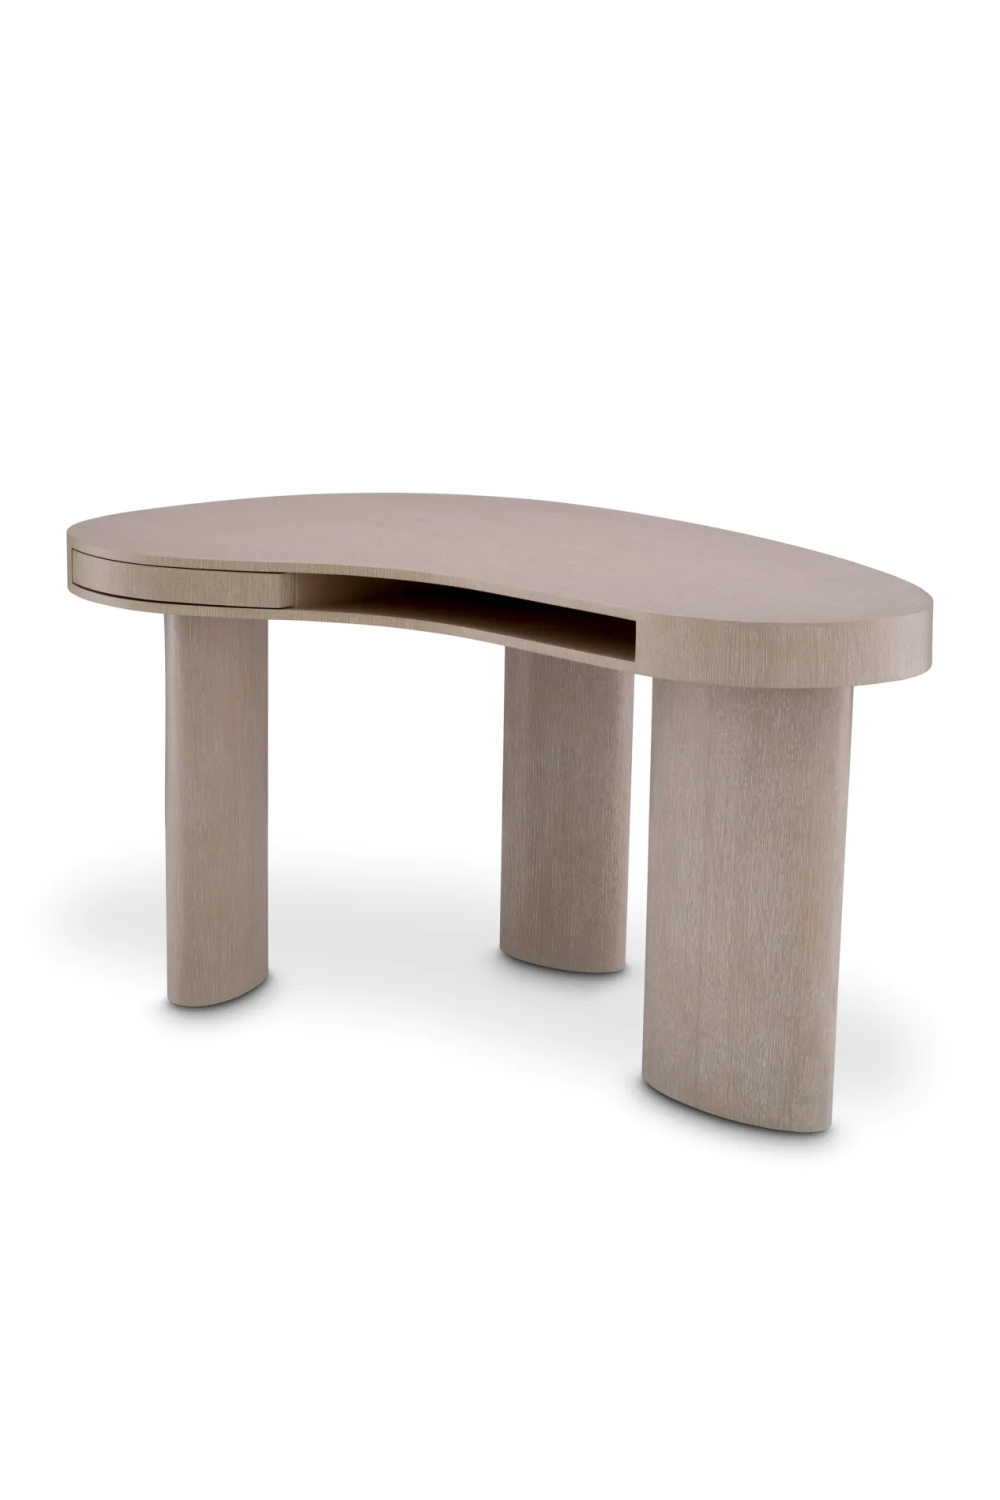 Free-Form Oak Desk | Eichholtz Vence | Oroa.com